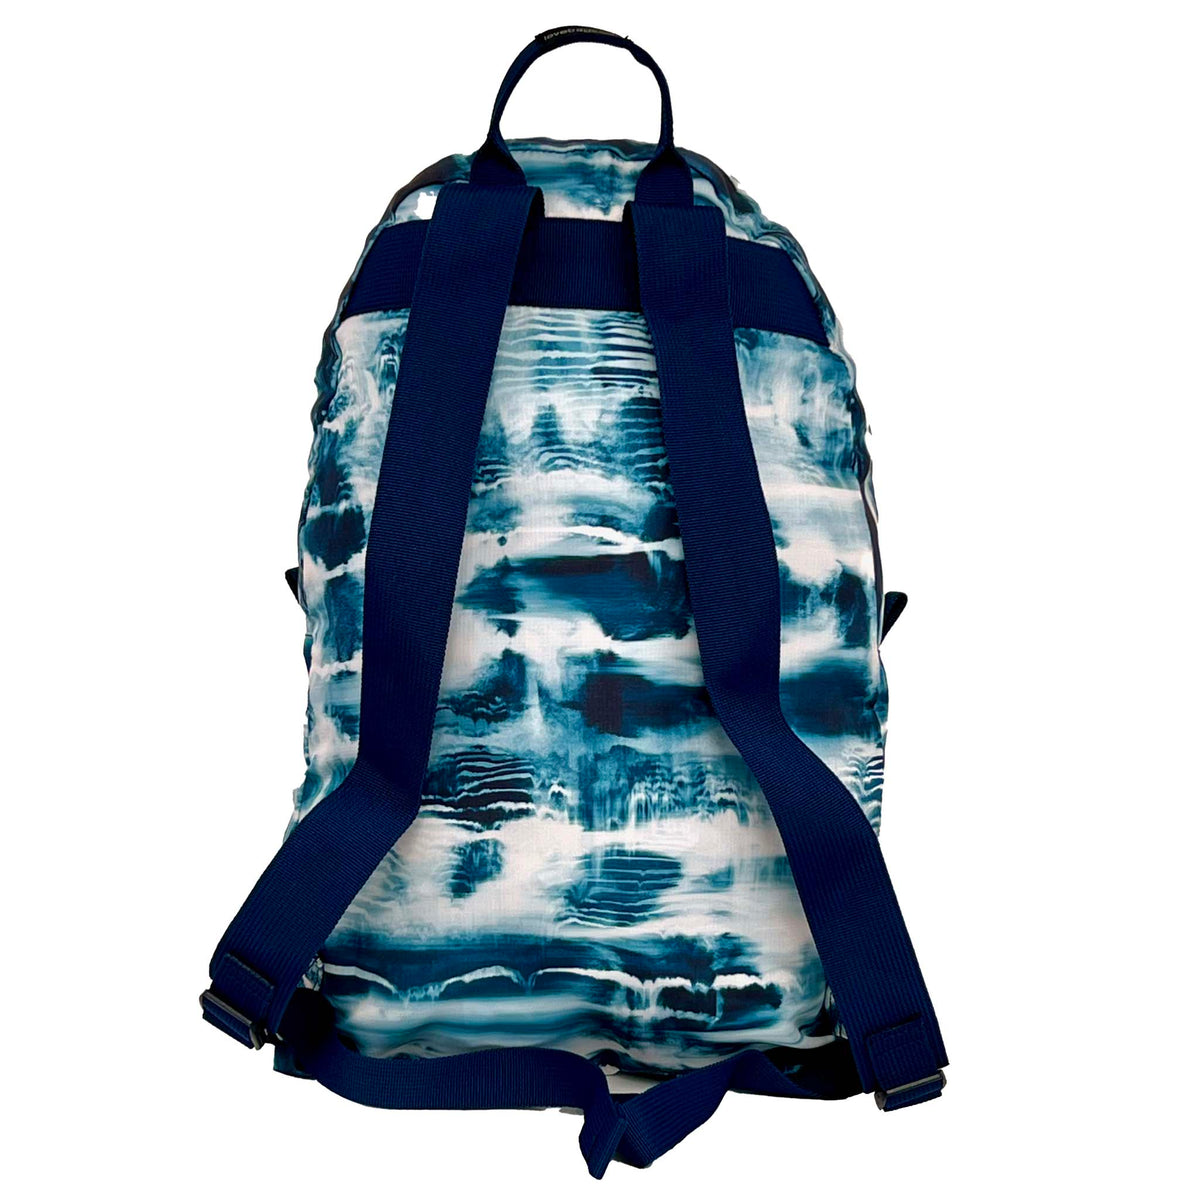 Stash Backpack - Ocean Tyde